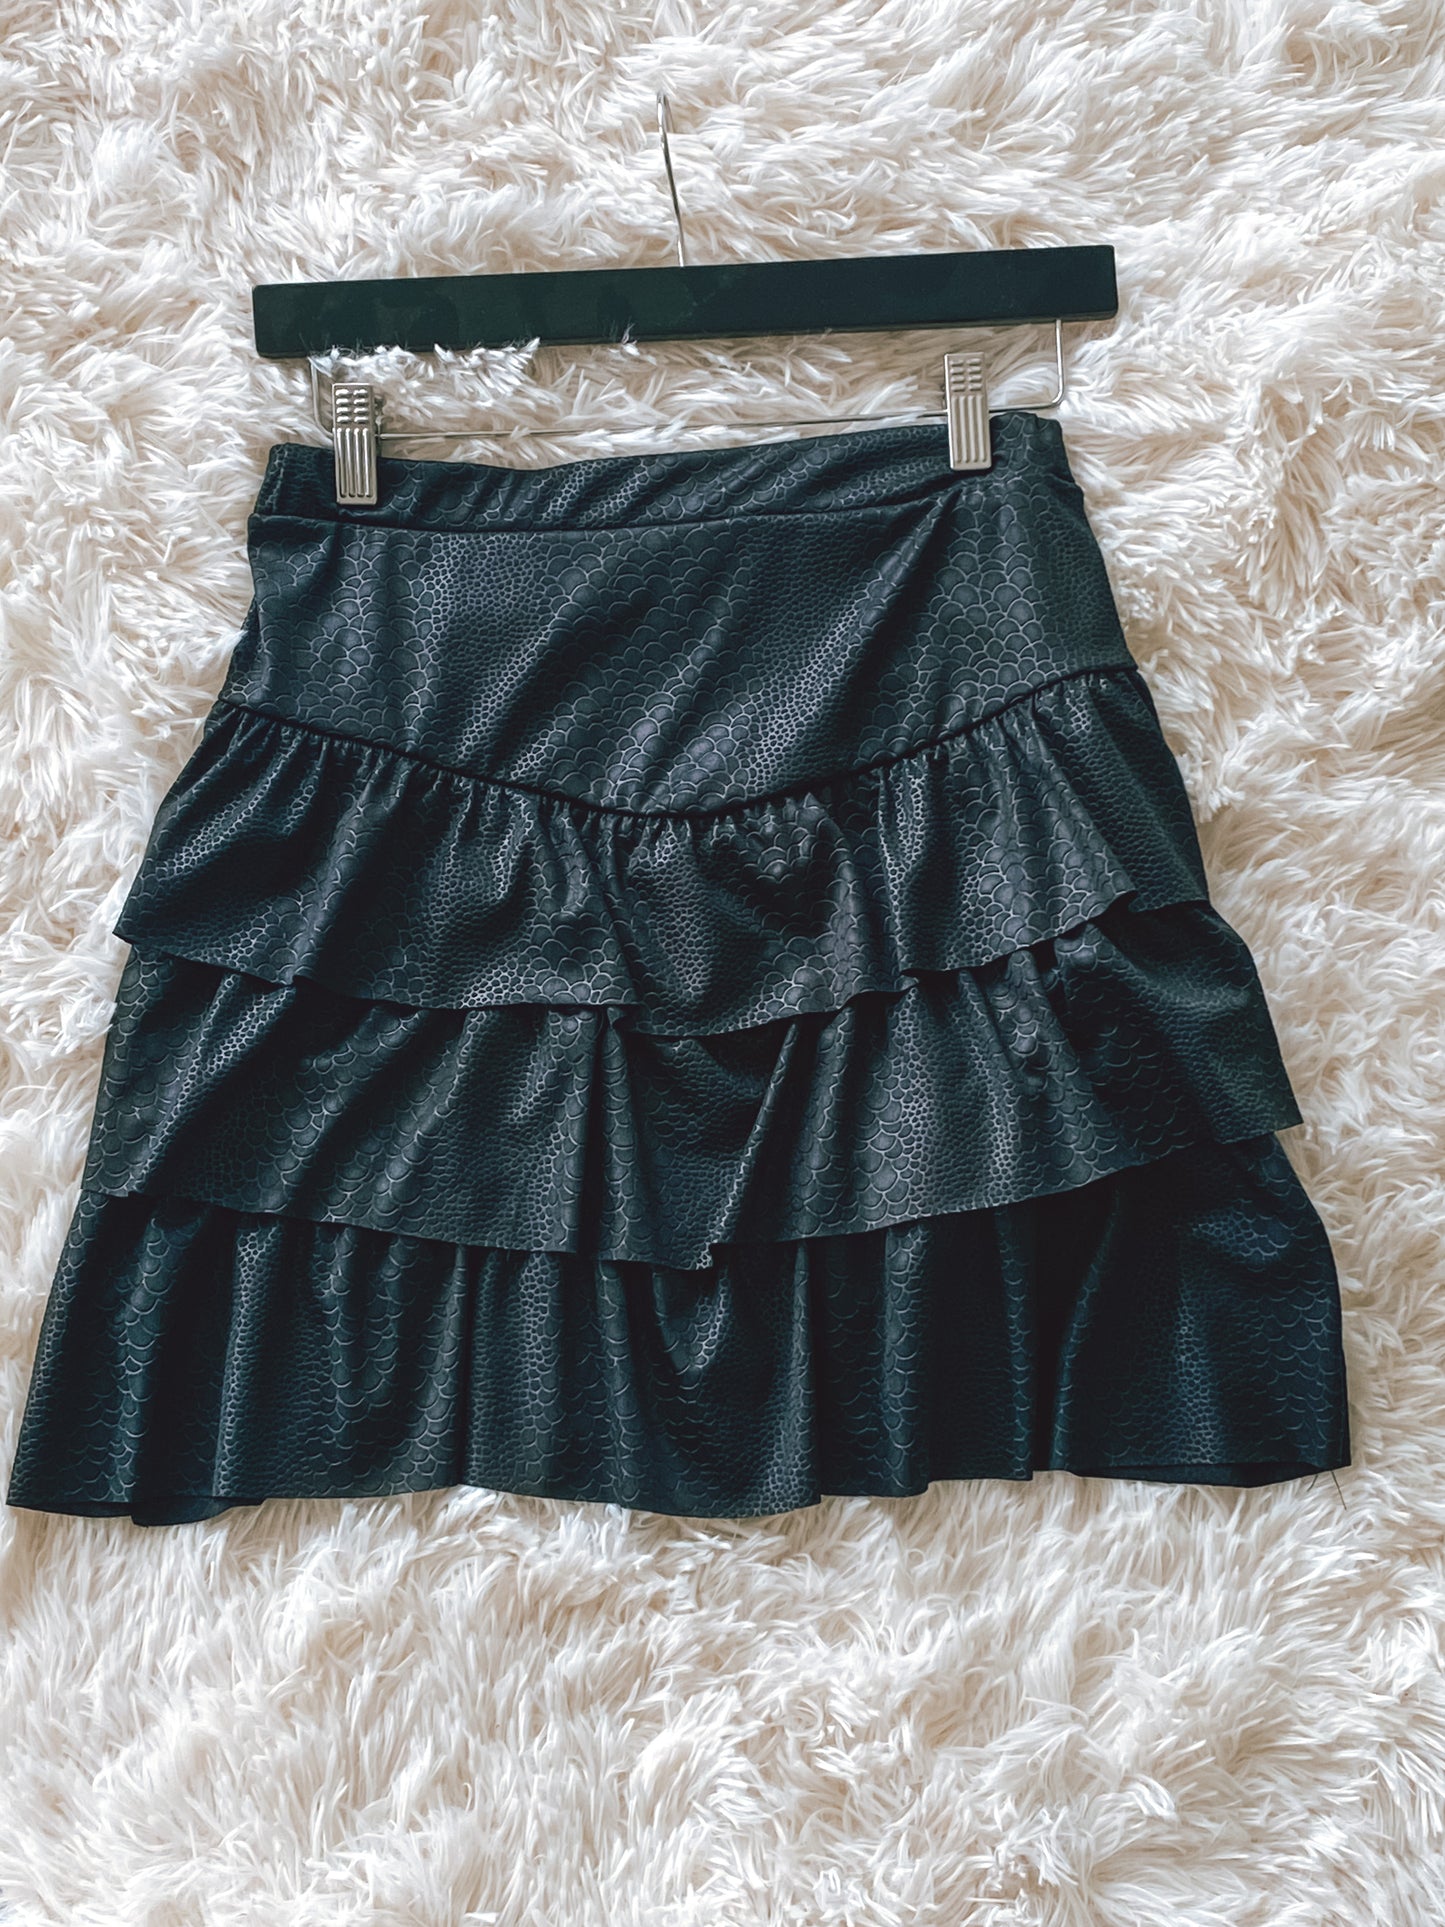 snake textured black mini skirt